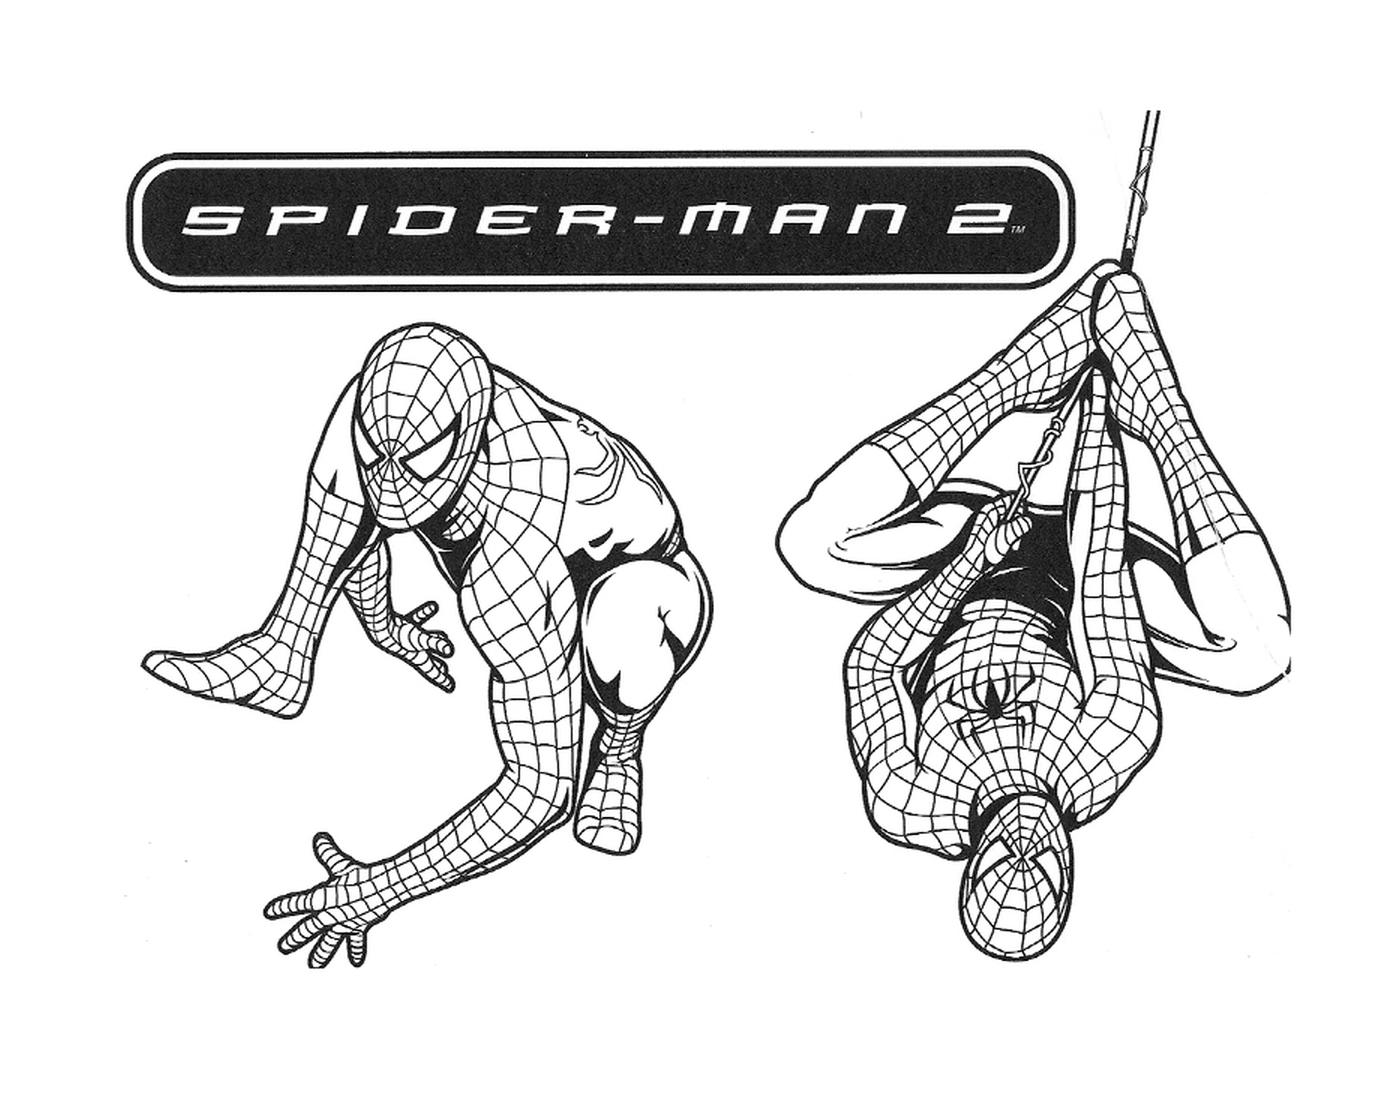  Personaggio di Spiderman 